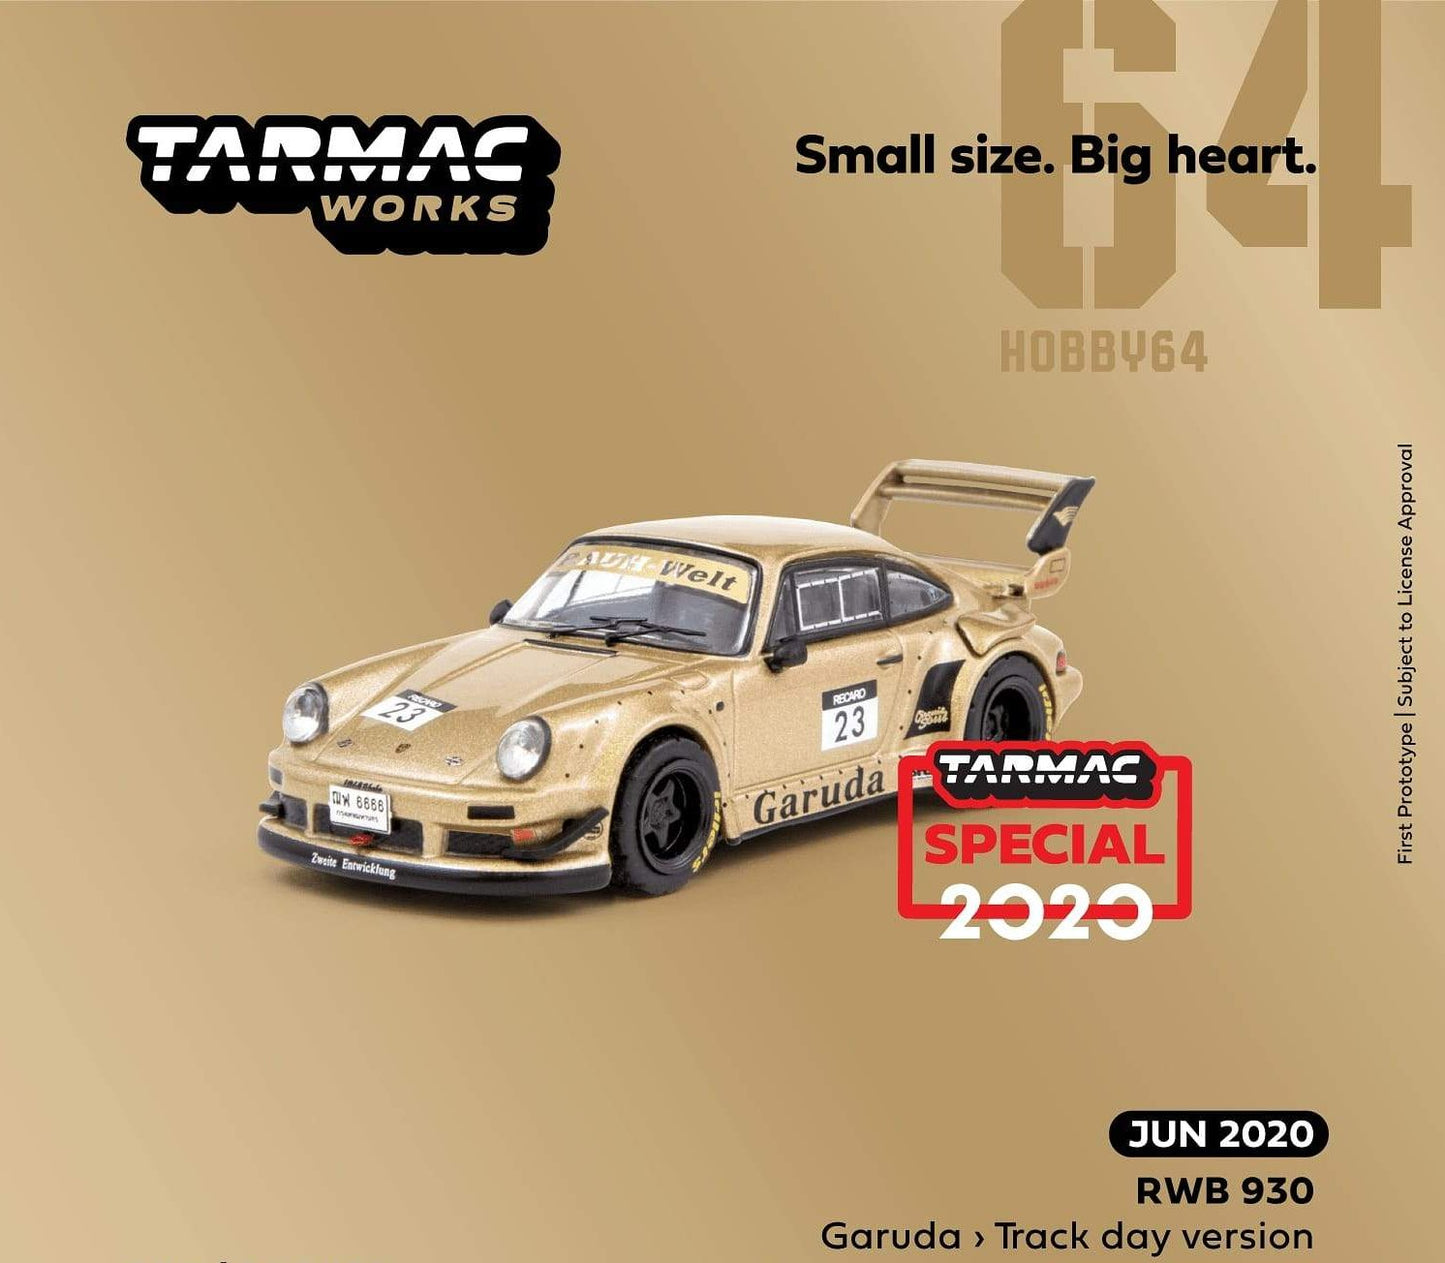 Tarmacworks RWB 930 Garuda - Track day version